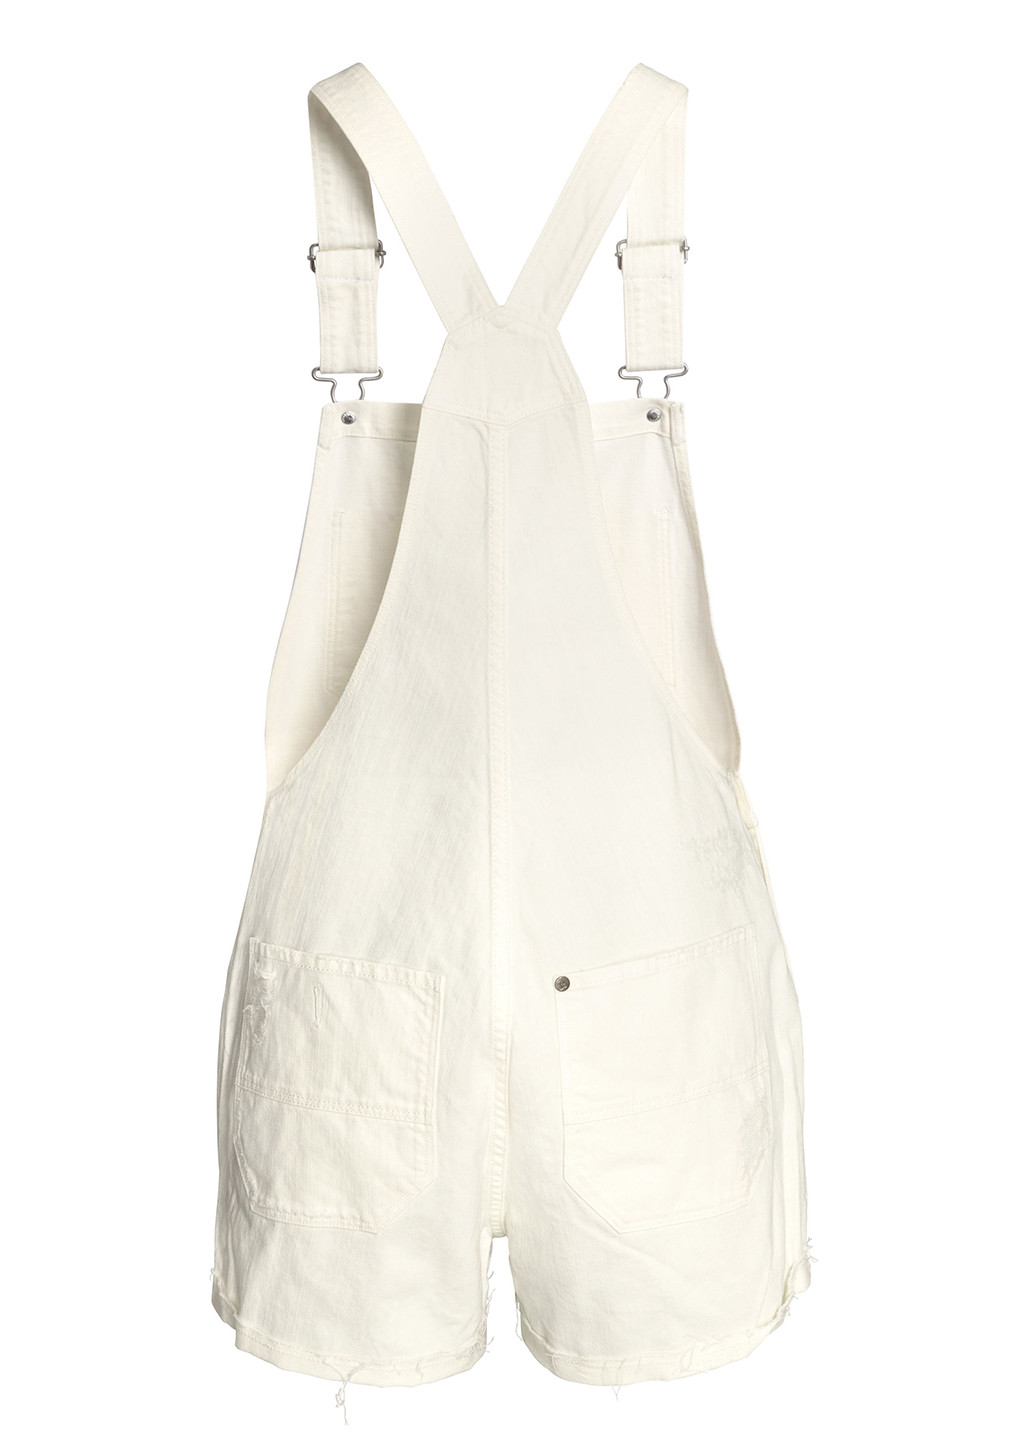 Комбинезон H&M комбинезон-шорты однотонный белый денил